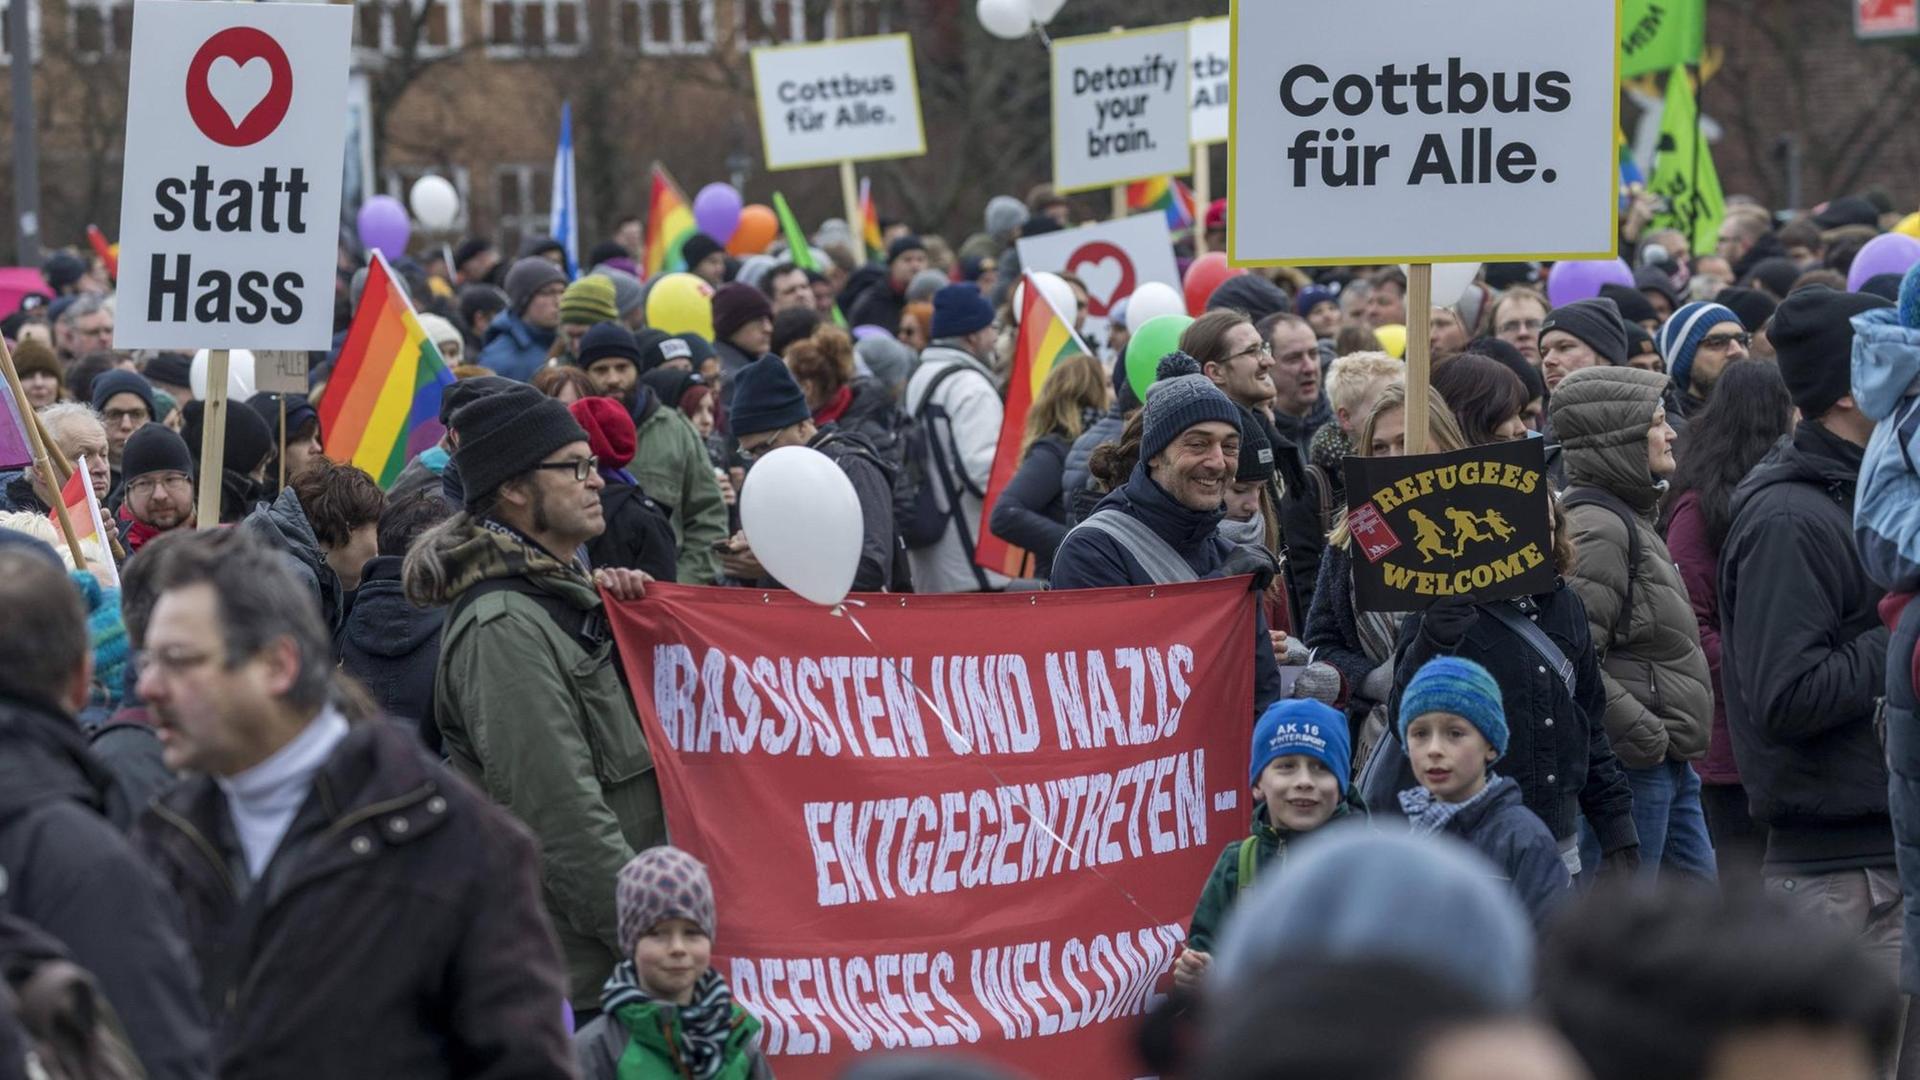 Demonstranten mit Bannern auf denen steht: "Liebe statt Hass" und "Cottbus für Alle".